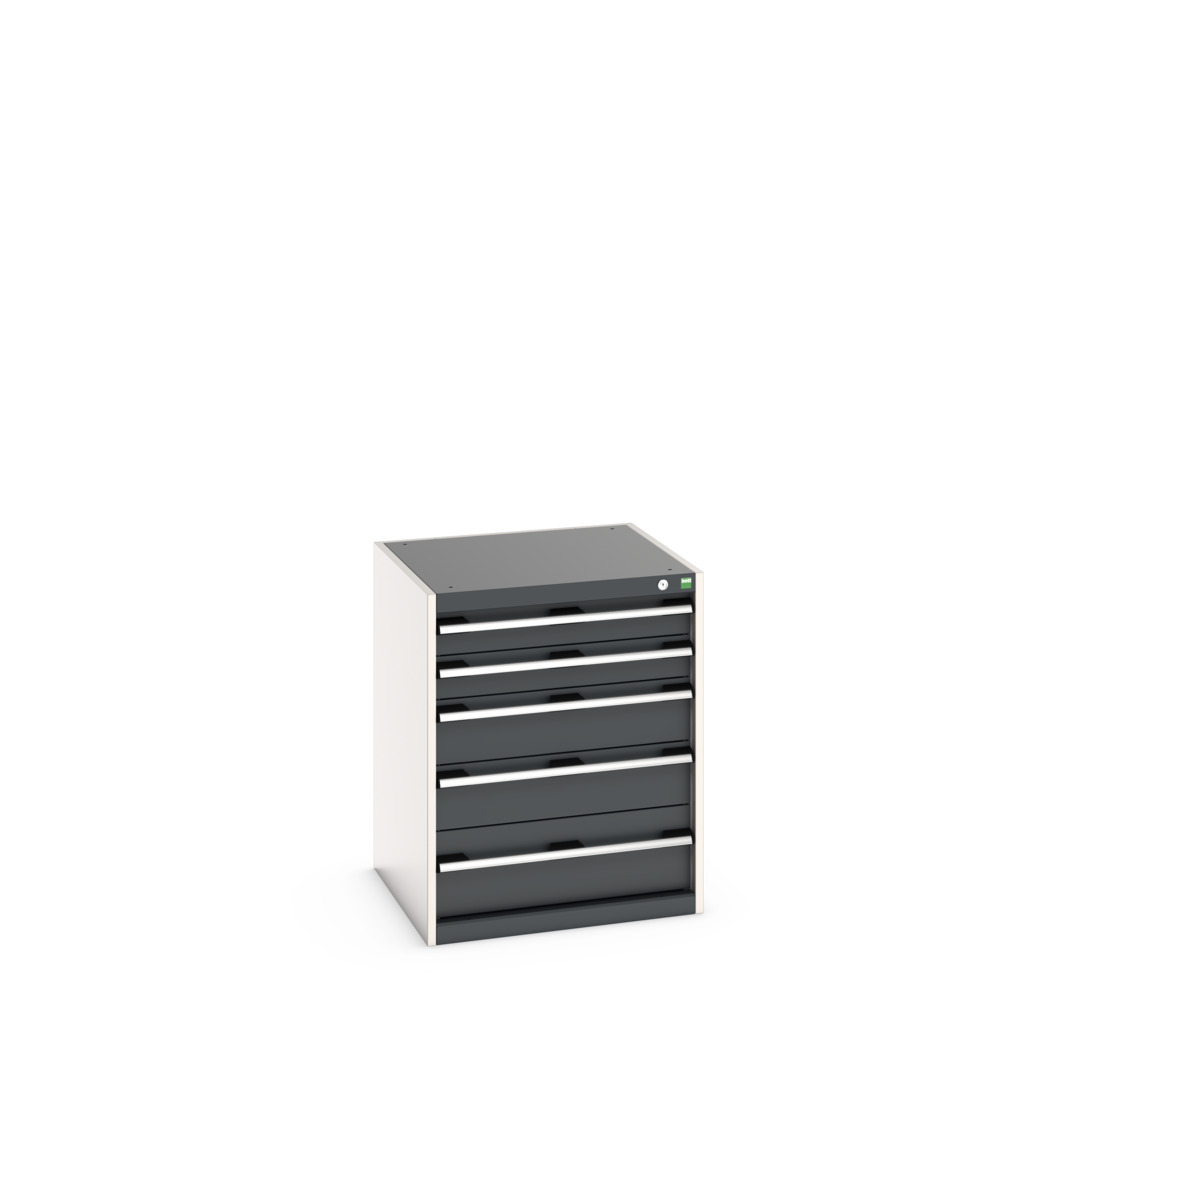 40019035.19V - cubio drawer cabinet